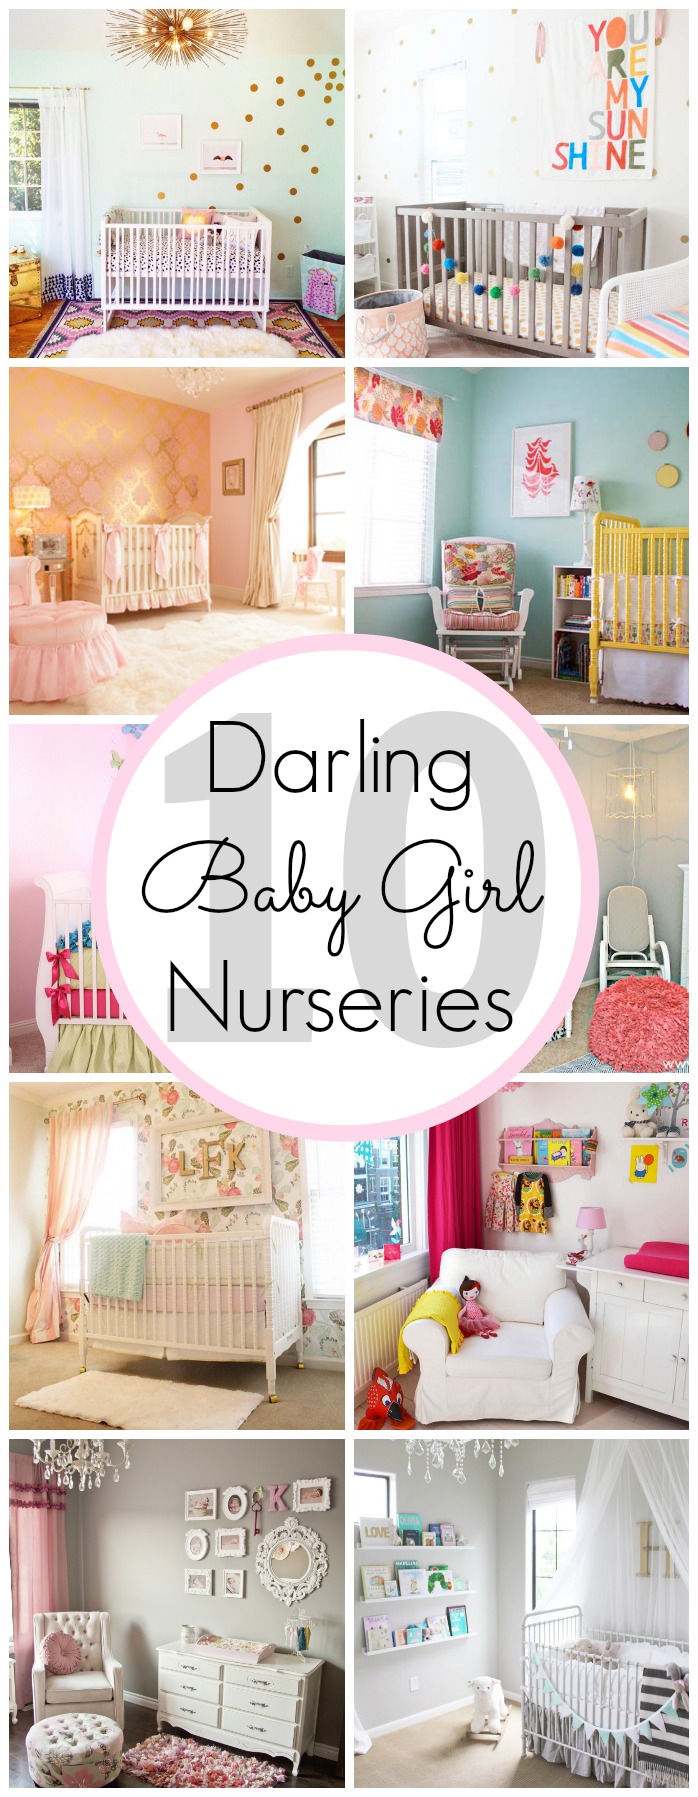 10 Darling Baby Girl Nursery Ideas - www.classyclutter.net 